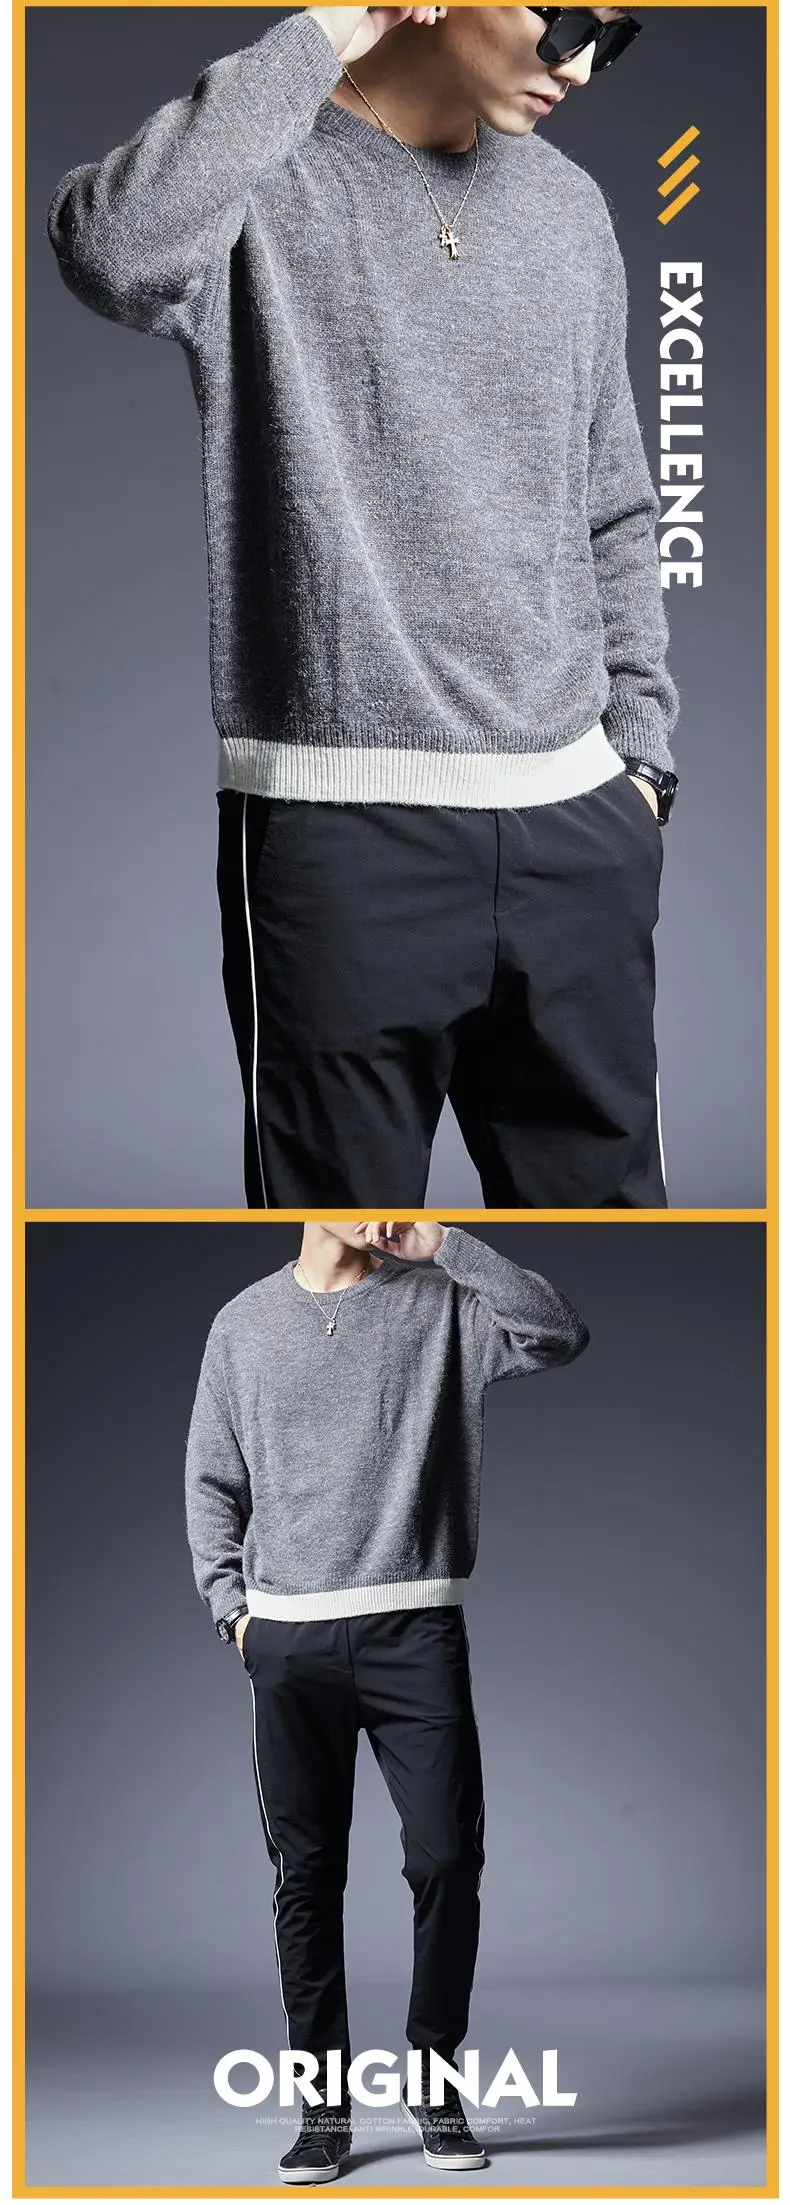 2019 новый модный брендовый свитер для мужчин s пуловер сплошной цвет Slim Fit Джемперы вязаный теплый зимний Корейский стиль повседневная